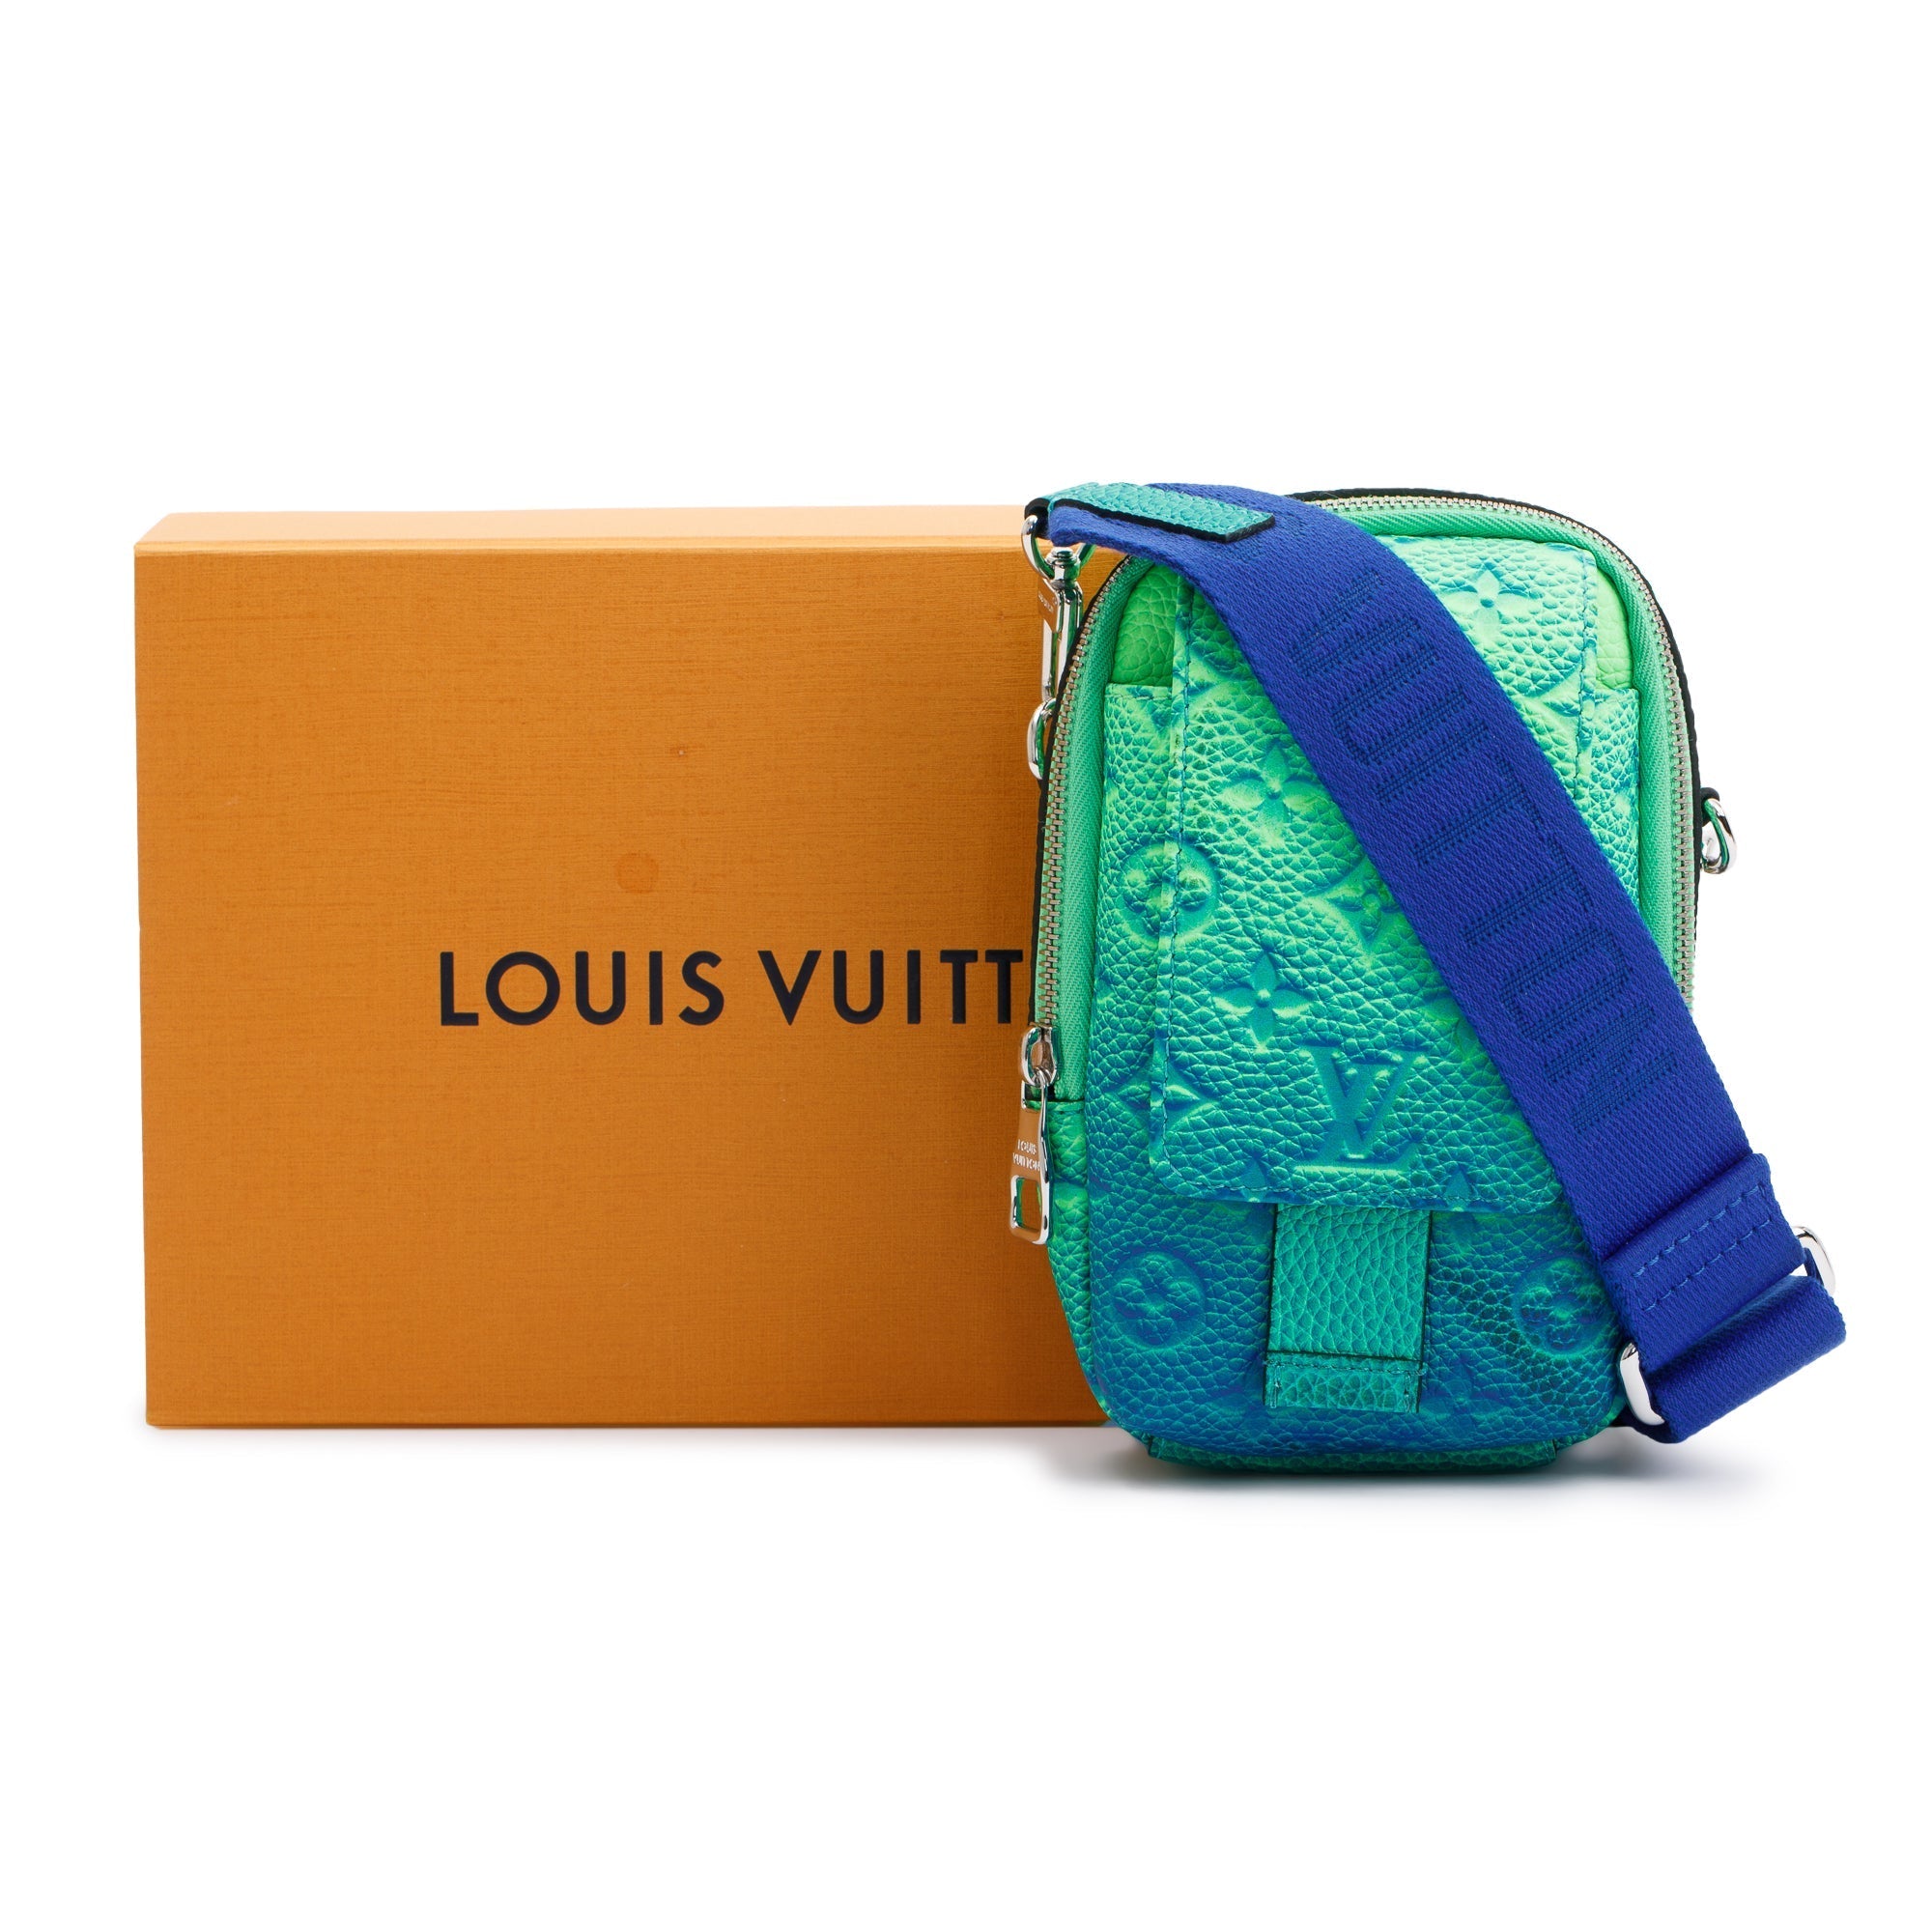 LOUIS VUITTON Taurillon Illusion Double Phone Pouch Shoulder Bag